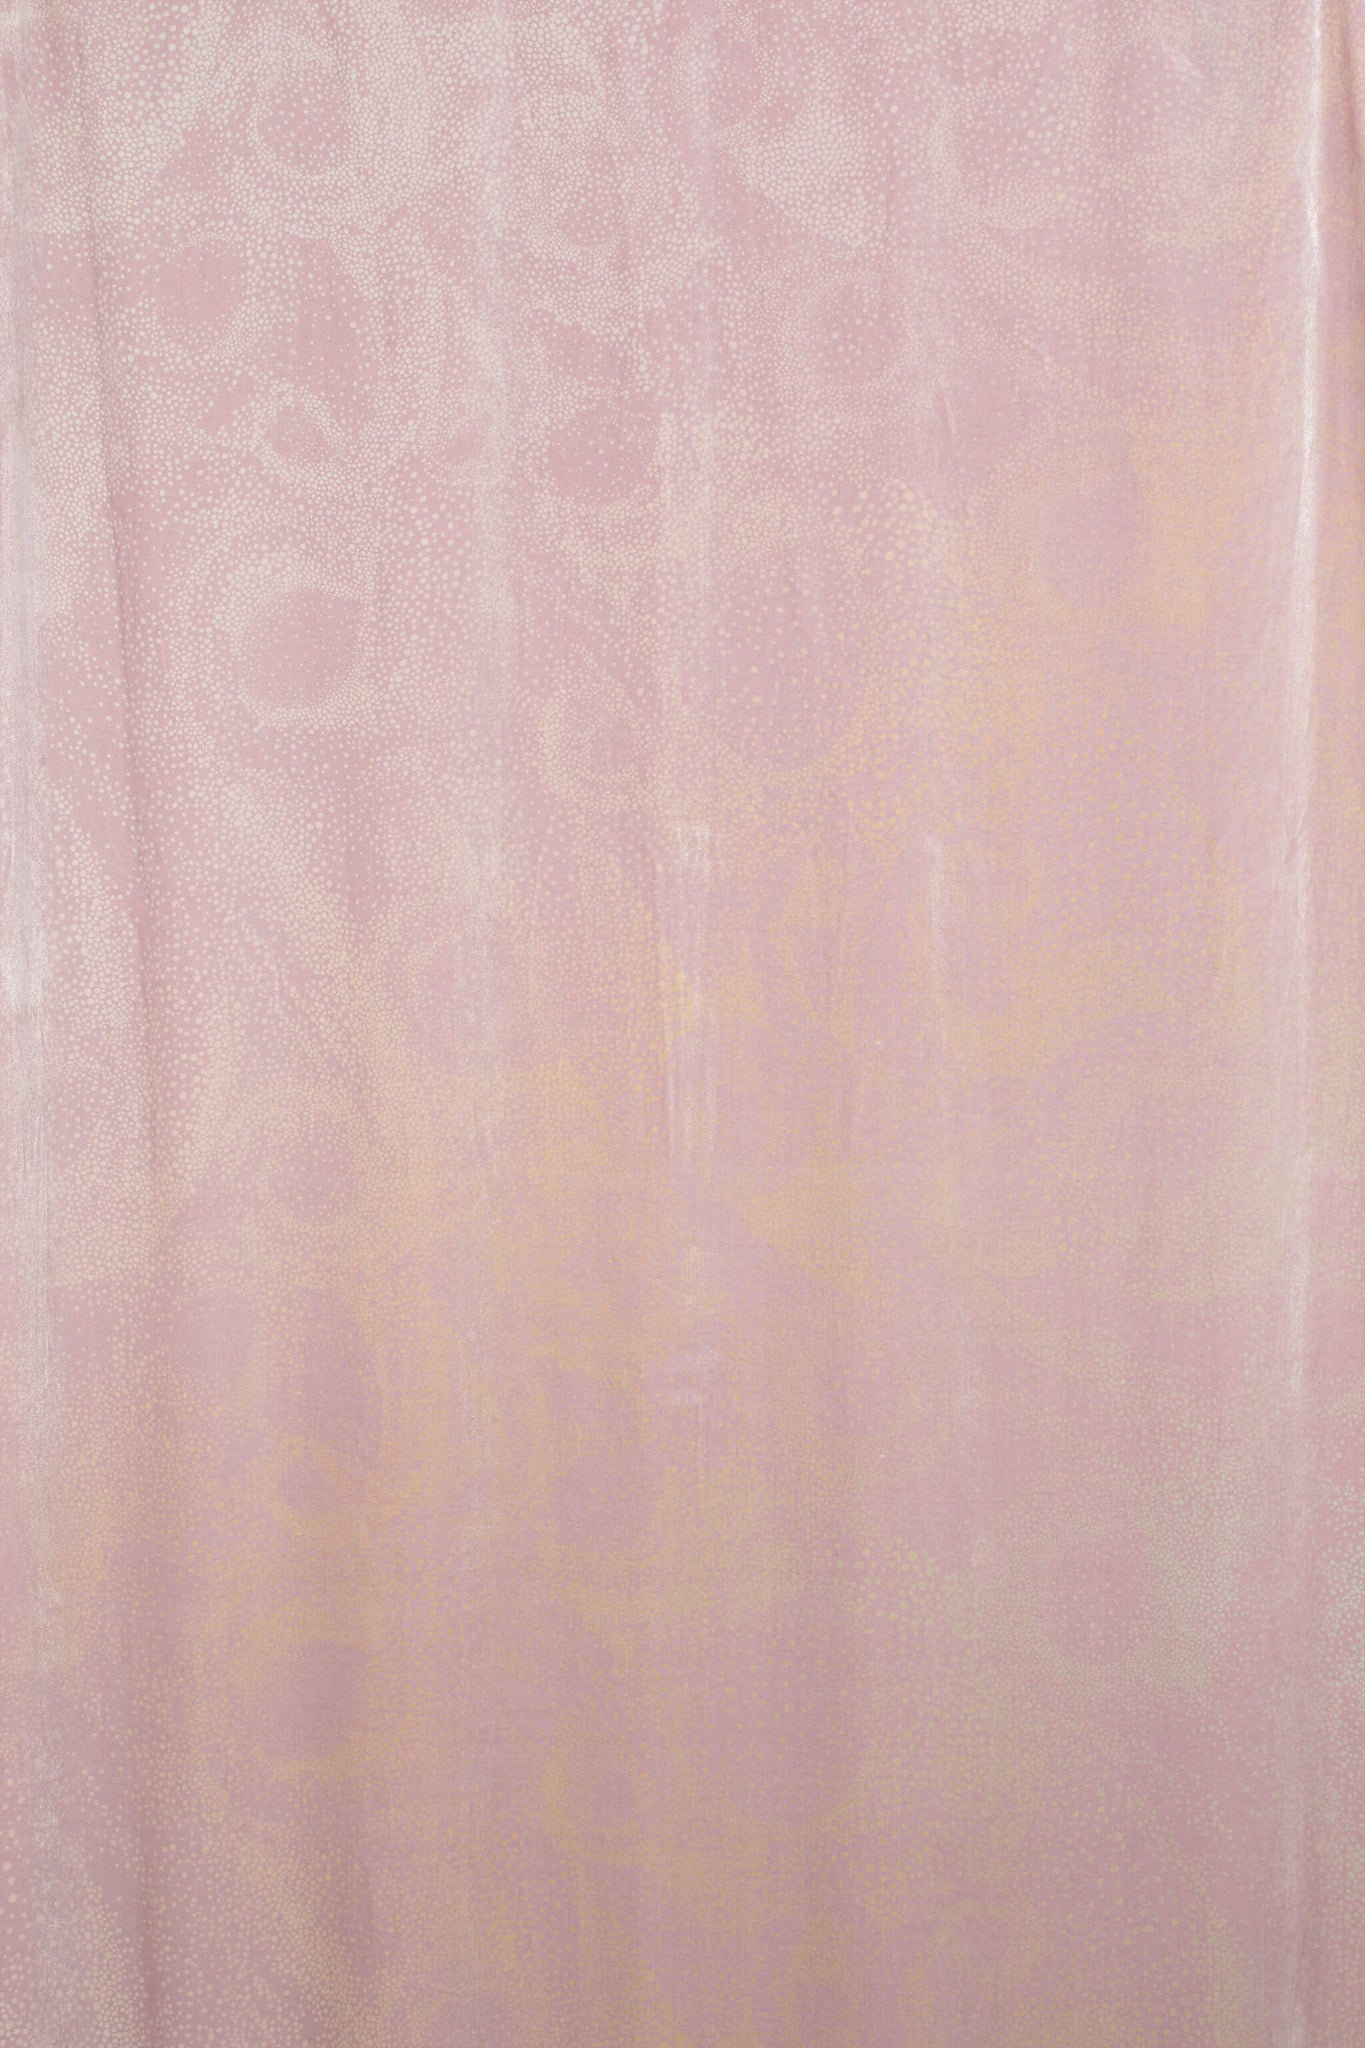 Aurora textile design dusty pink silk velvet fabric by GvE&Co (Georgina von Etzdorf and co)